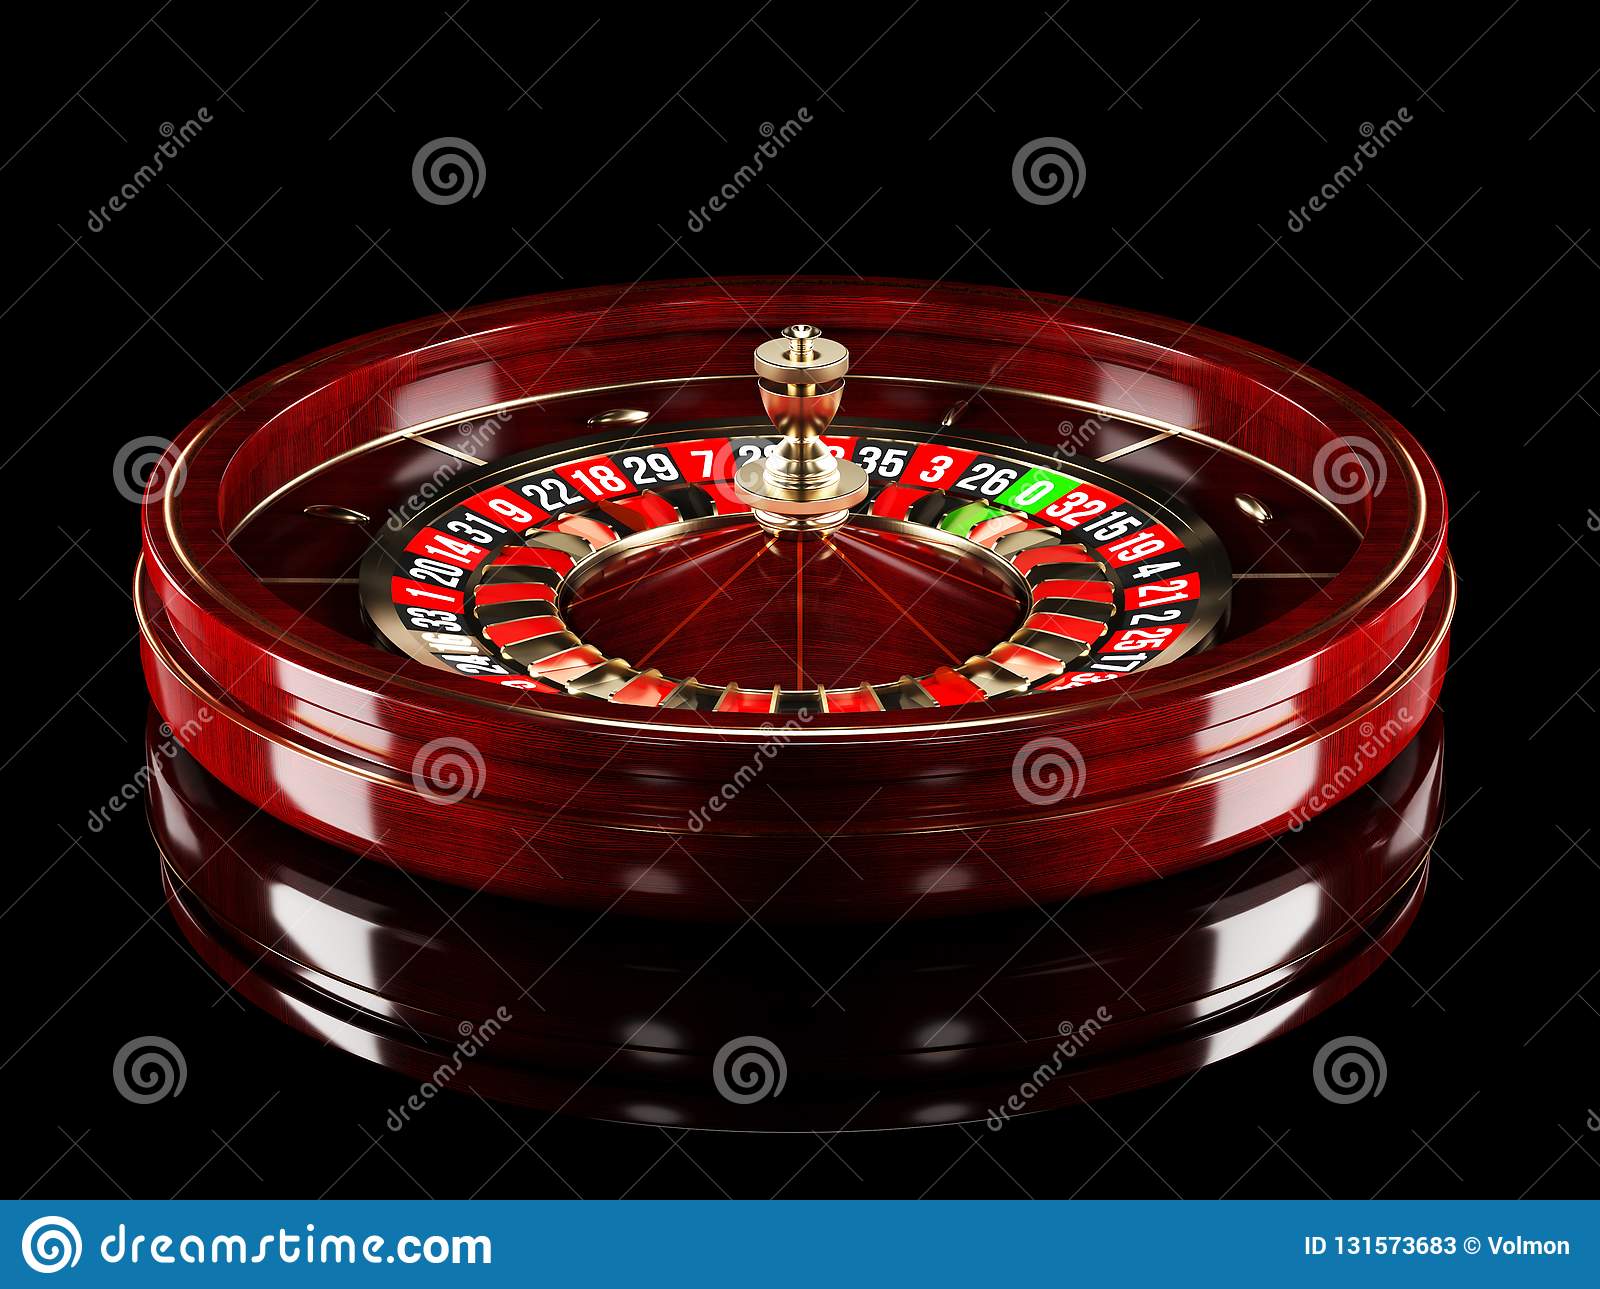 Casino pokerstars jogos a partir